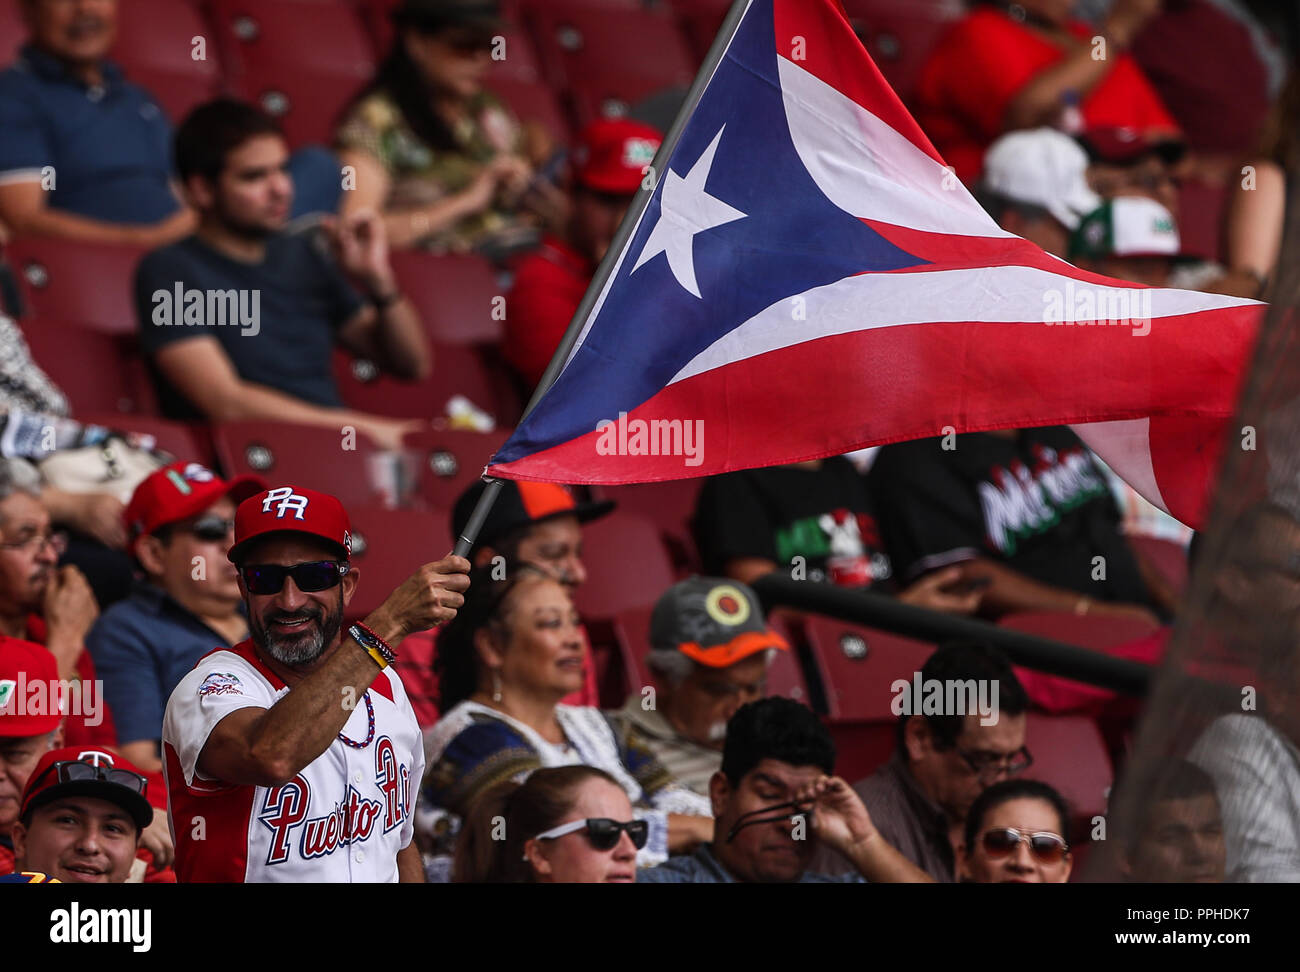 Aficion de Puerto Rico , duranti el partido de beisbol de la Serie del Caribe entre Republica Dominicana vs Puerto Rico en el Nuevo Estadio de los per Foto Stock